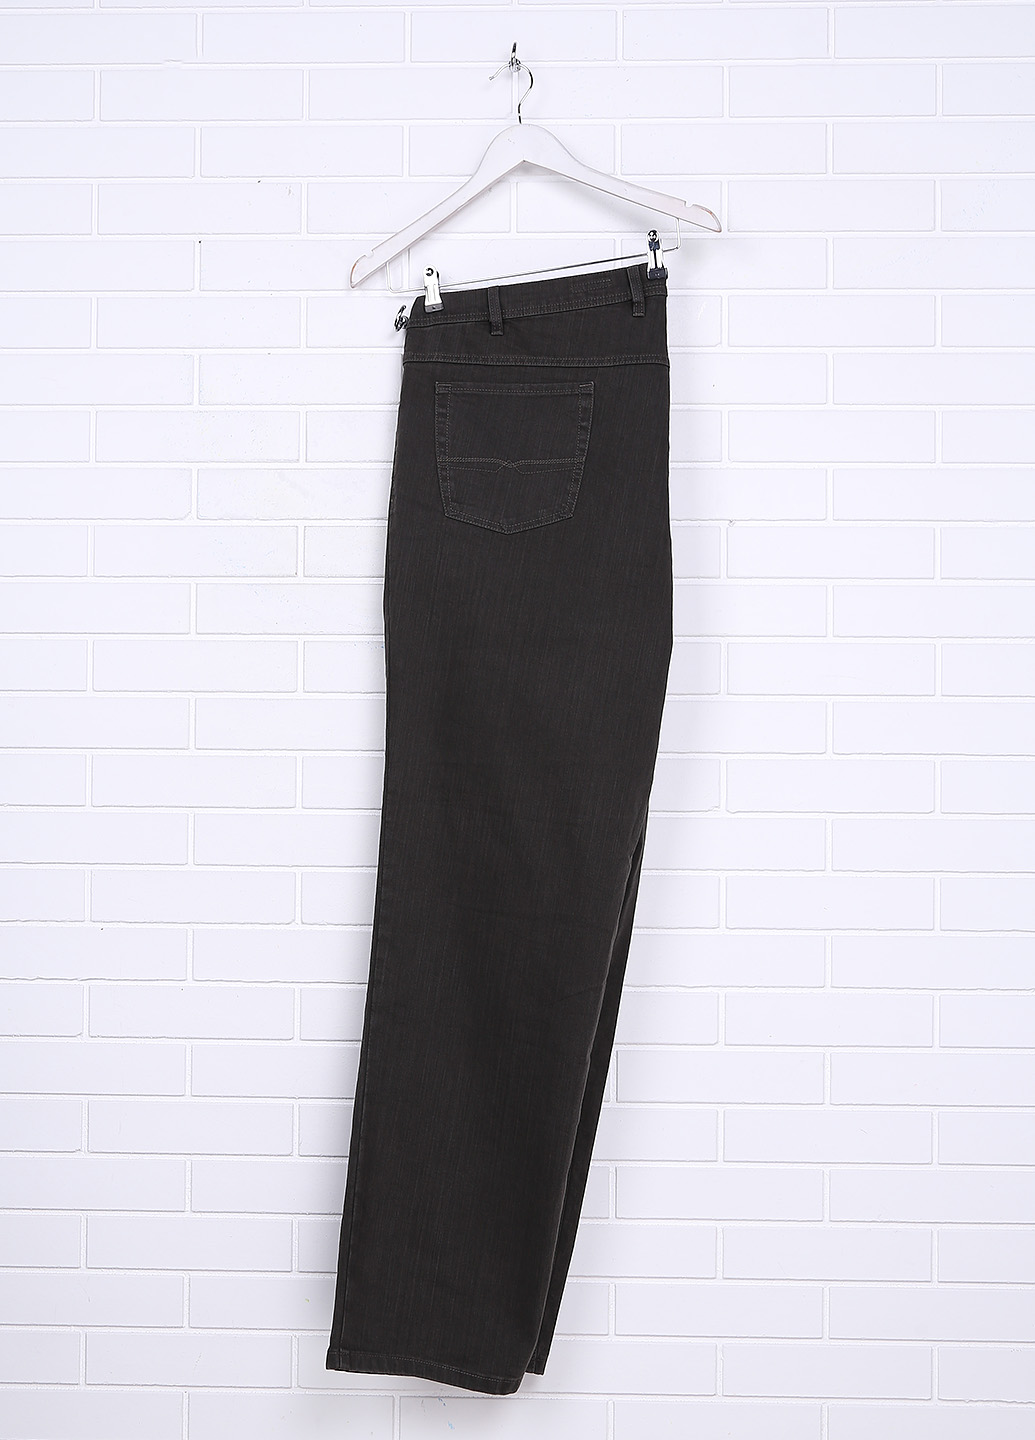 Чоловічі джинси Pioneer 54/34 Коричневий (P-6-001)